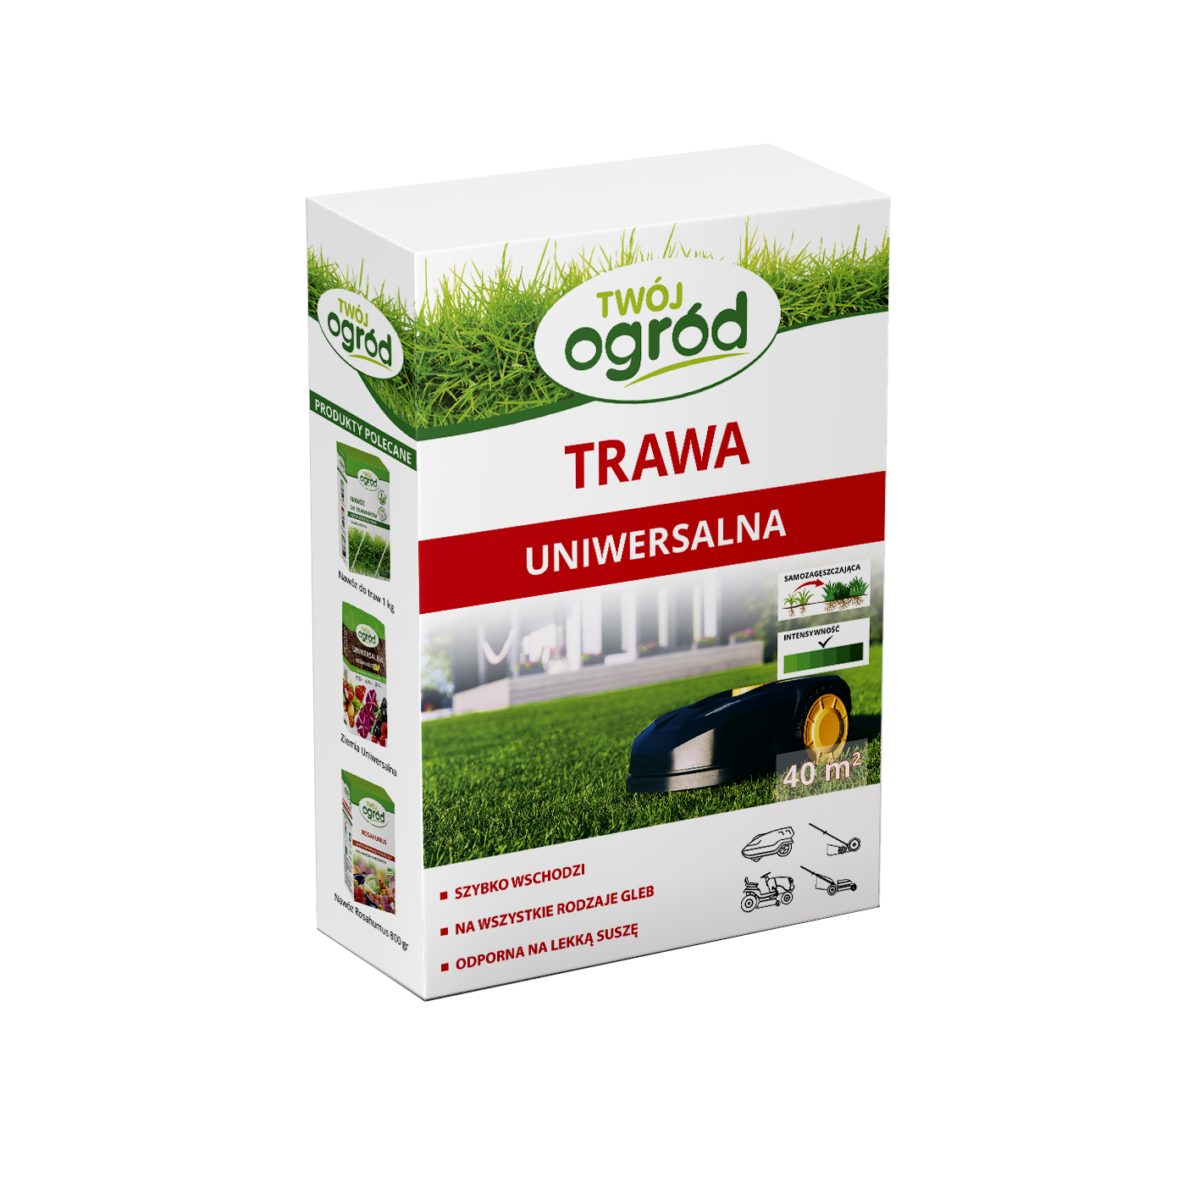 Trawa_Uniwersalna_09 kg_2022-08-20-1w (002)